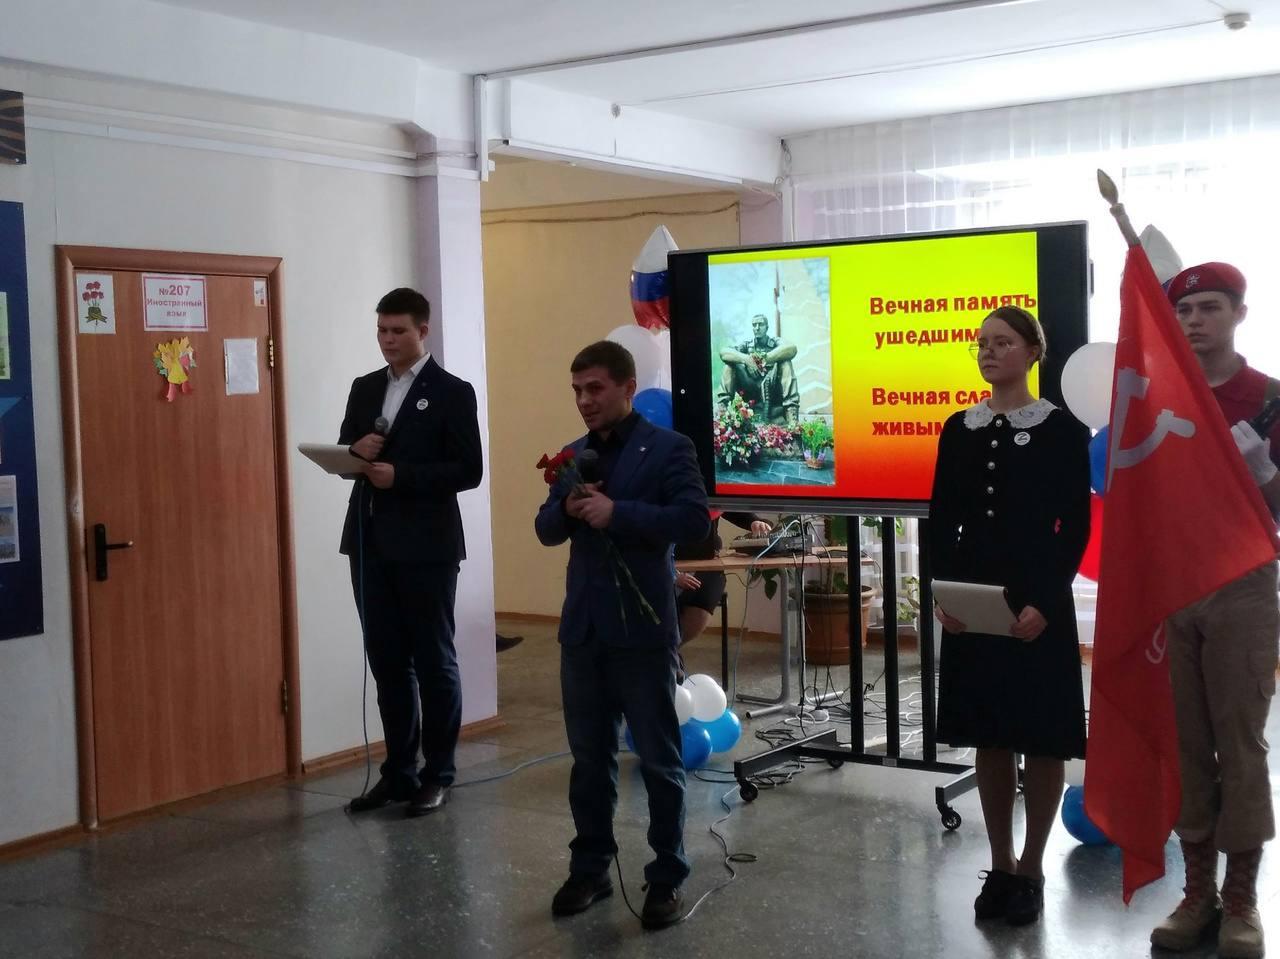 Фото Вечная память: в новосибирской школе установили мемориал выпускнику, погибшему в ходе СВО 2